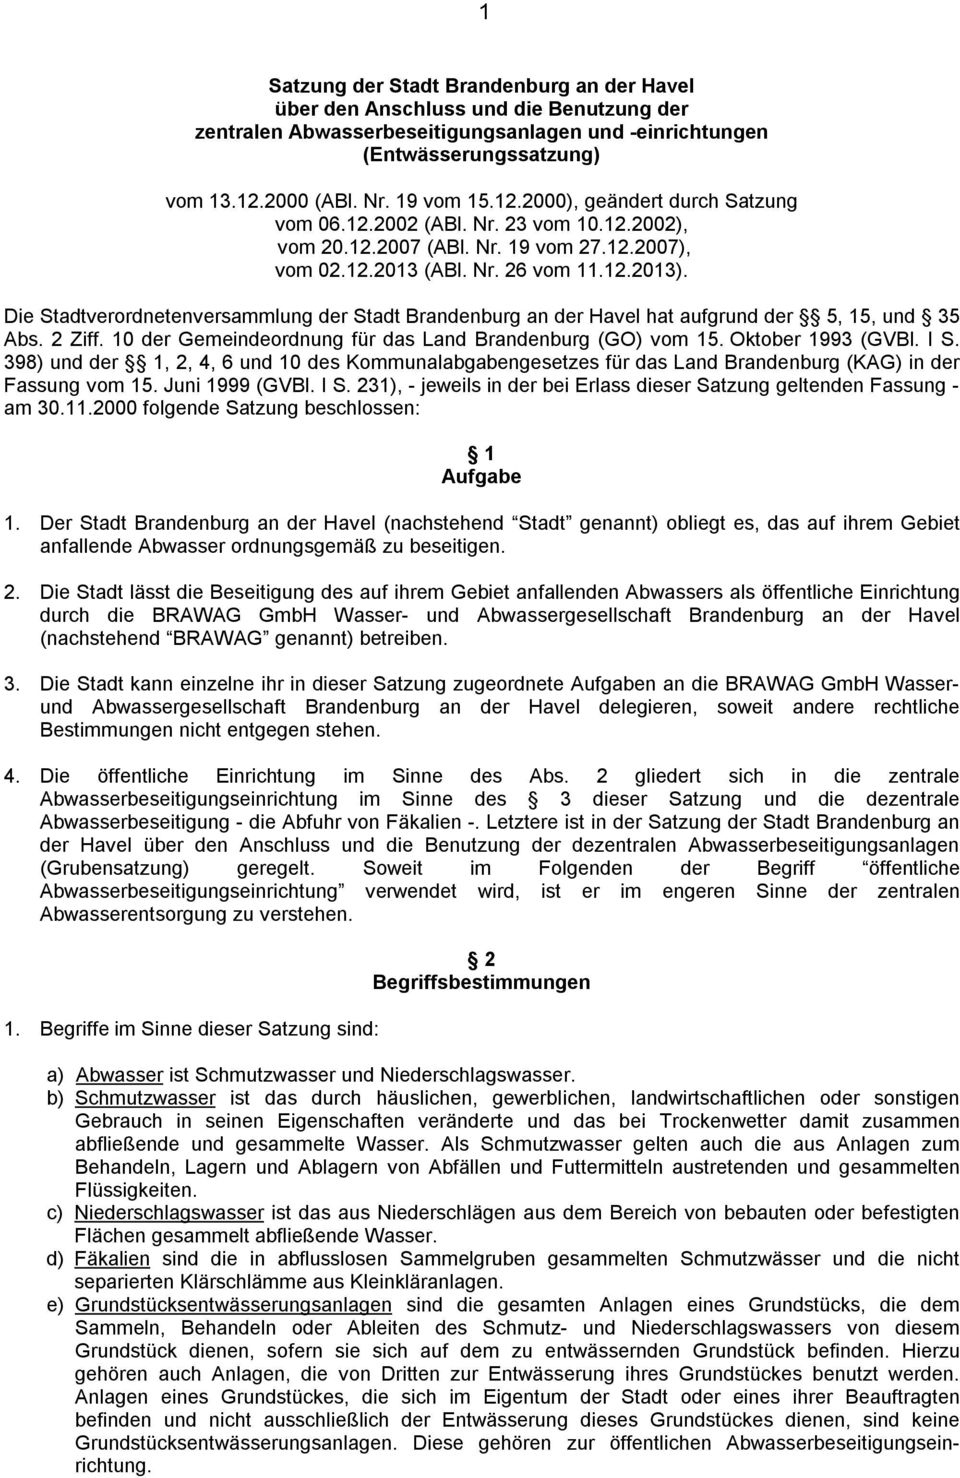 Die Stadtverordnetenversammlung der Stadt Brandenburg an der Havel hat aufgrund der 5, 15, und 35 Abs. 2 Ziff. 10 der Gemeindeordnung für das Land Brandenburg (GO) vom 15. Oktober 1993 (GVBl. I S.